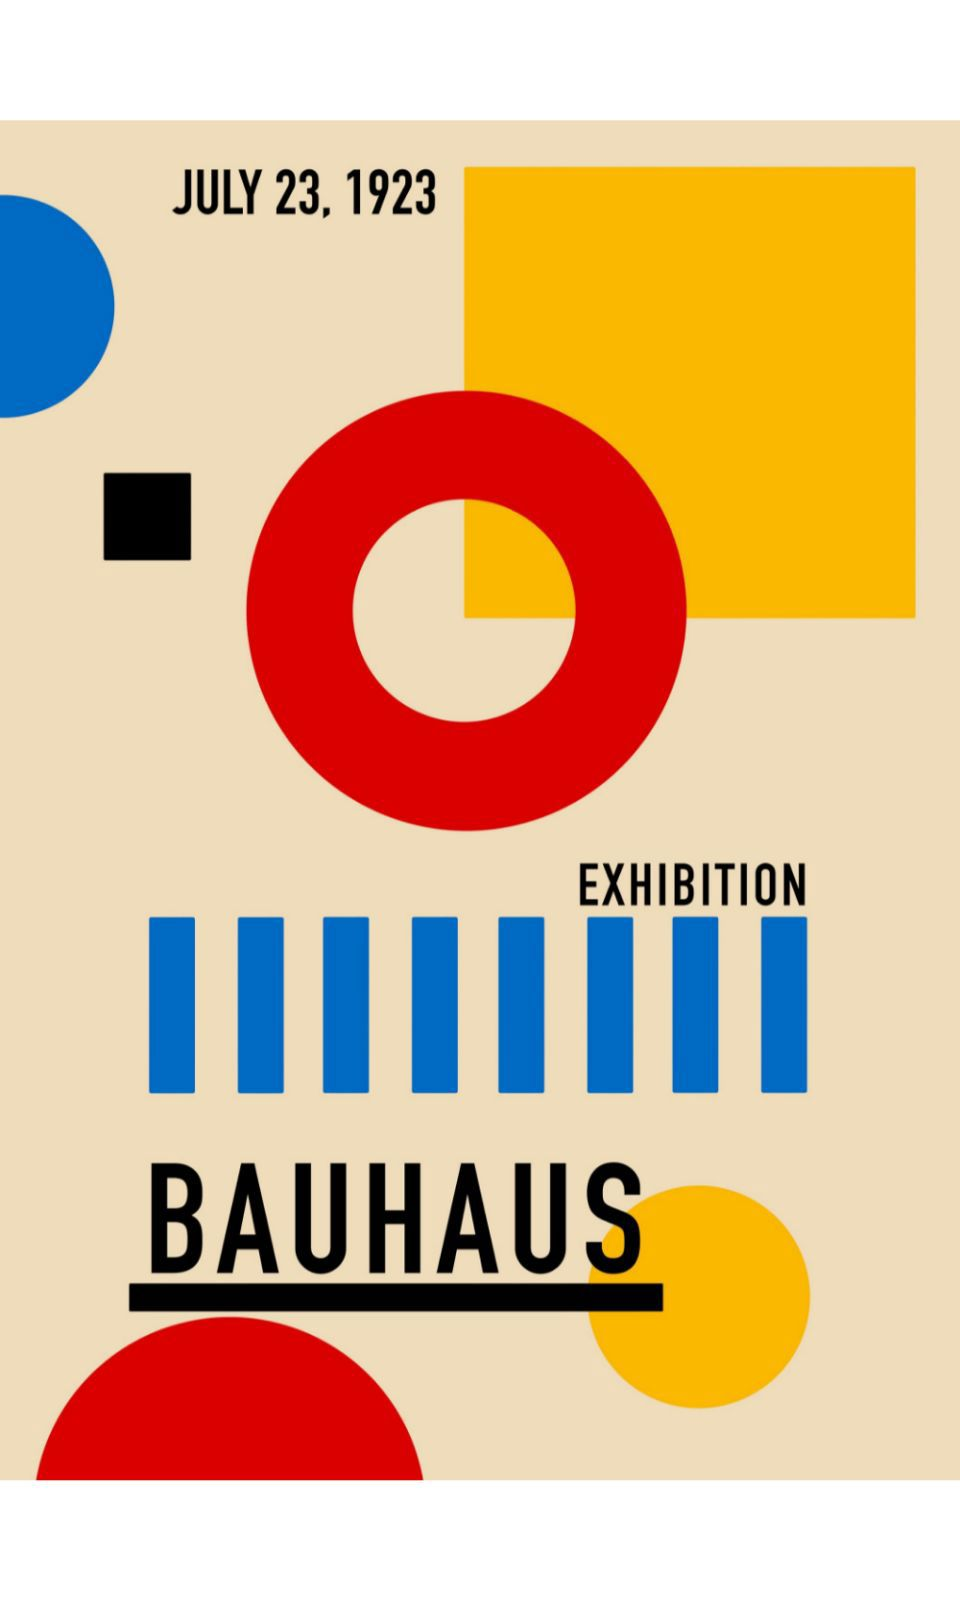 90266432 Постер Баухаус - Выставочный плакат 1923 года 60x90 см в раме STLM-0156436 ПРОСТОПОСТЕР